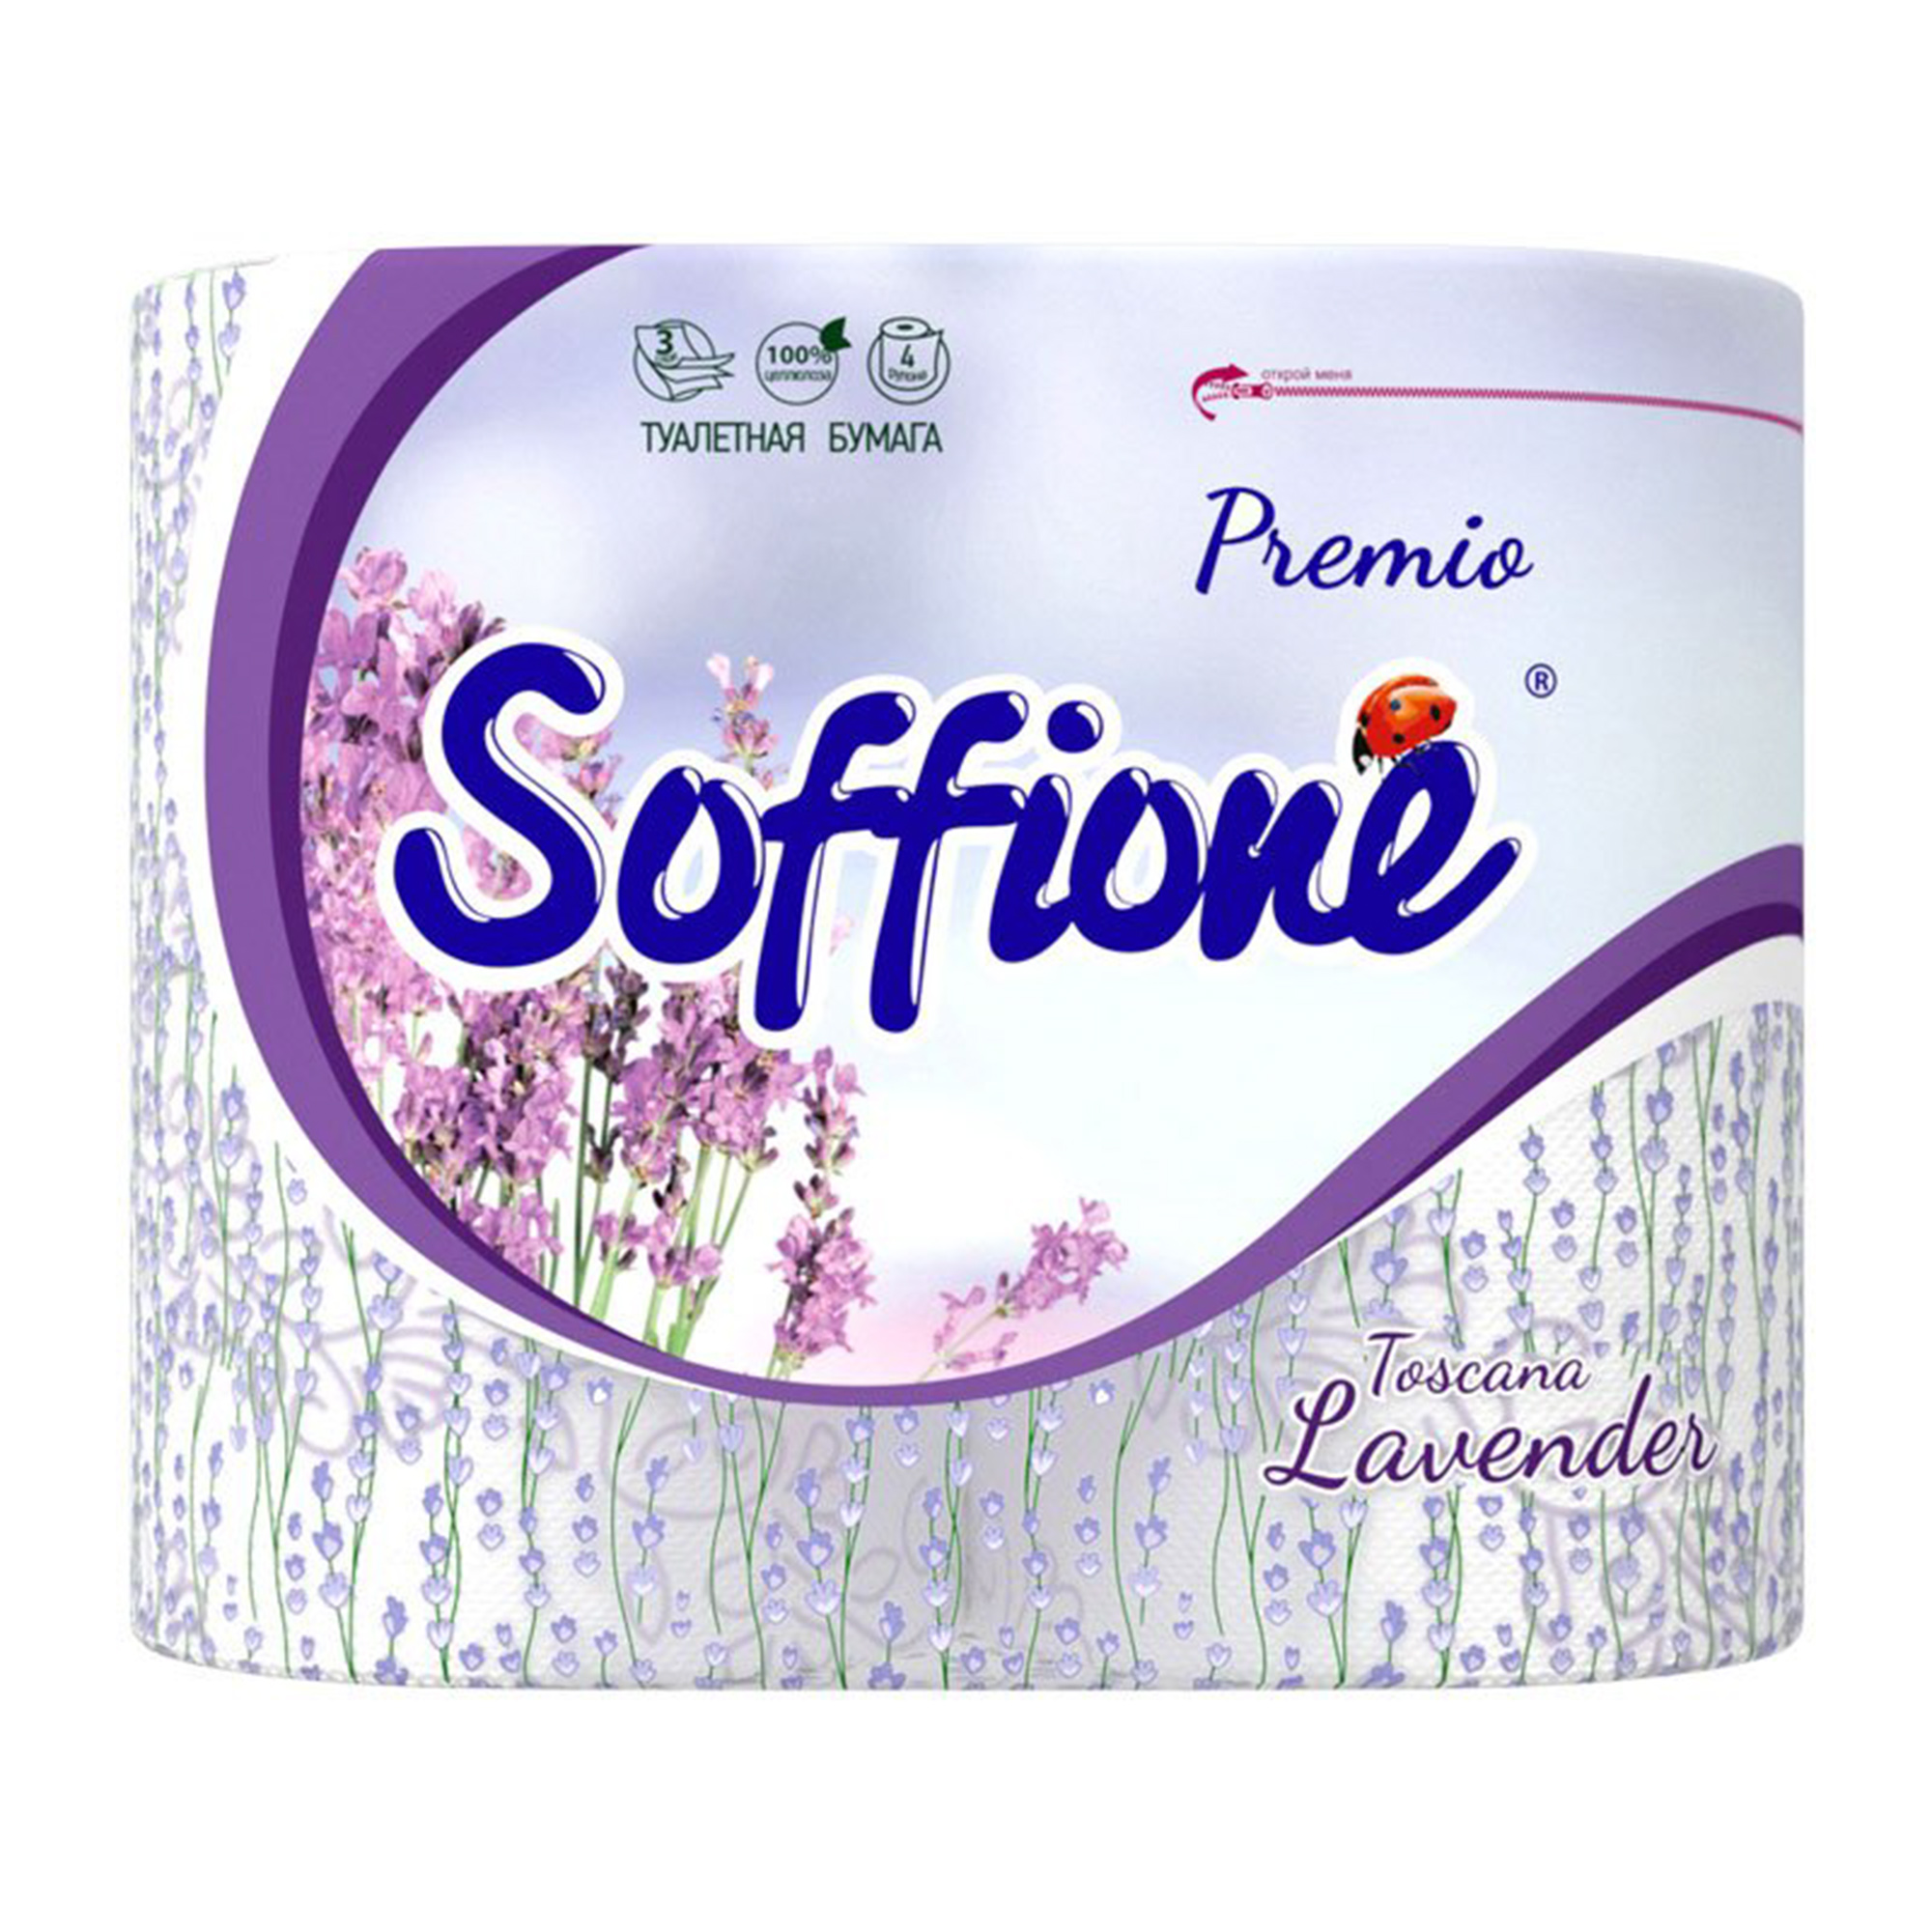 Туалетная бумага Soffione Premio Lavender 3 слоя 4 рулона бумага туалетная soffione premio toscana lavender 3 слоя 4 рулон 10 архбум 397